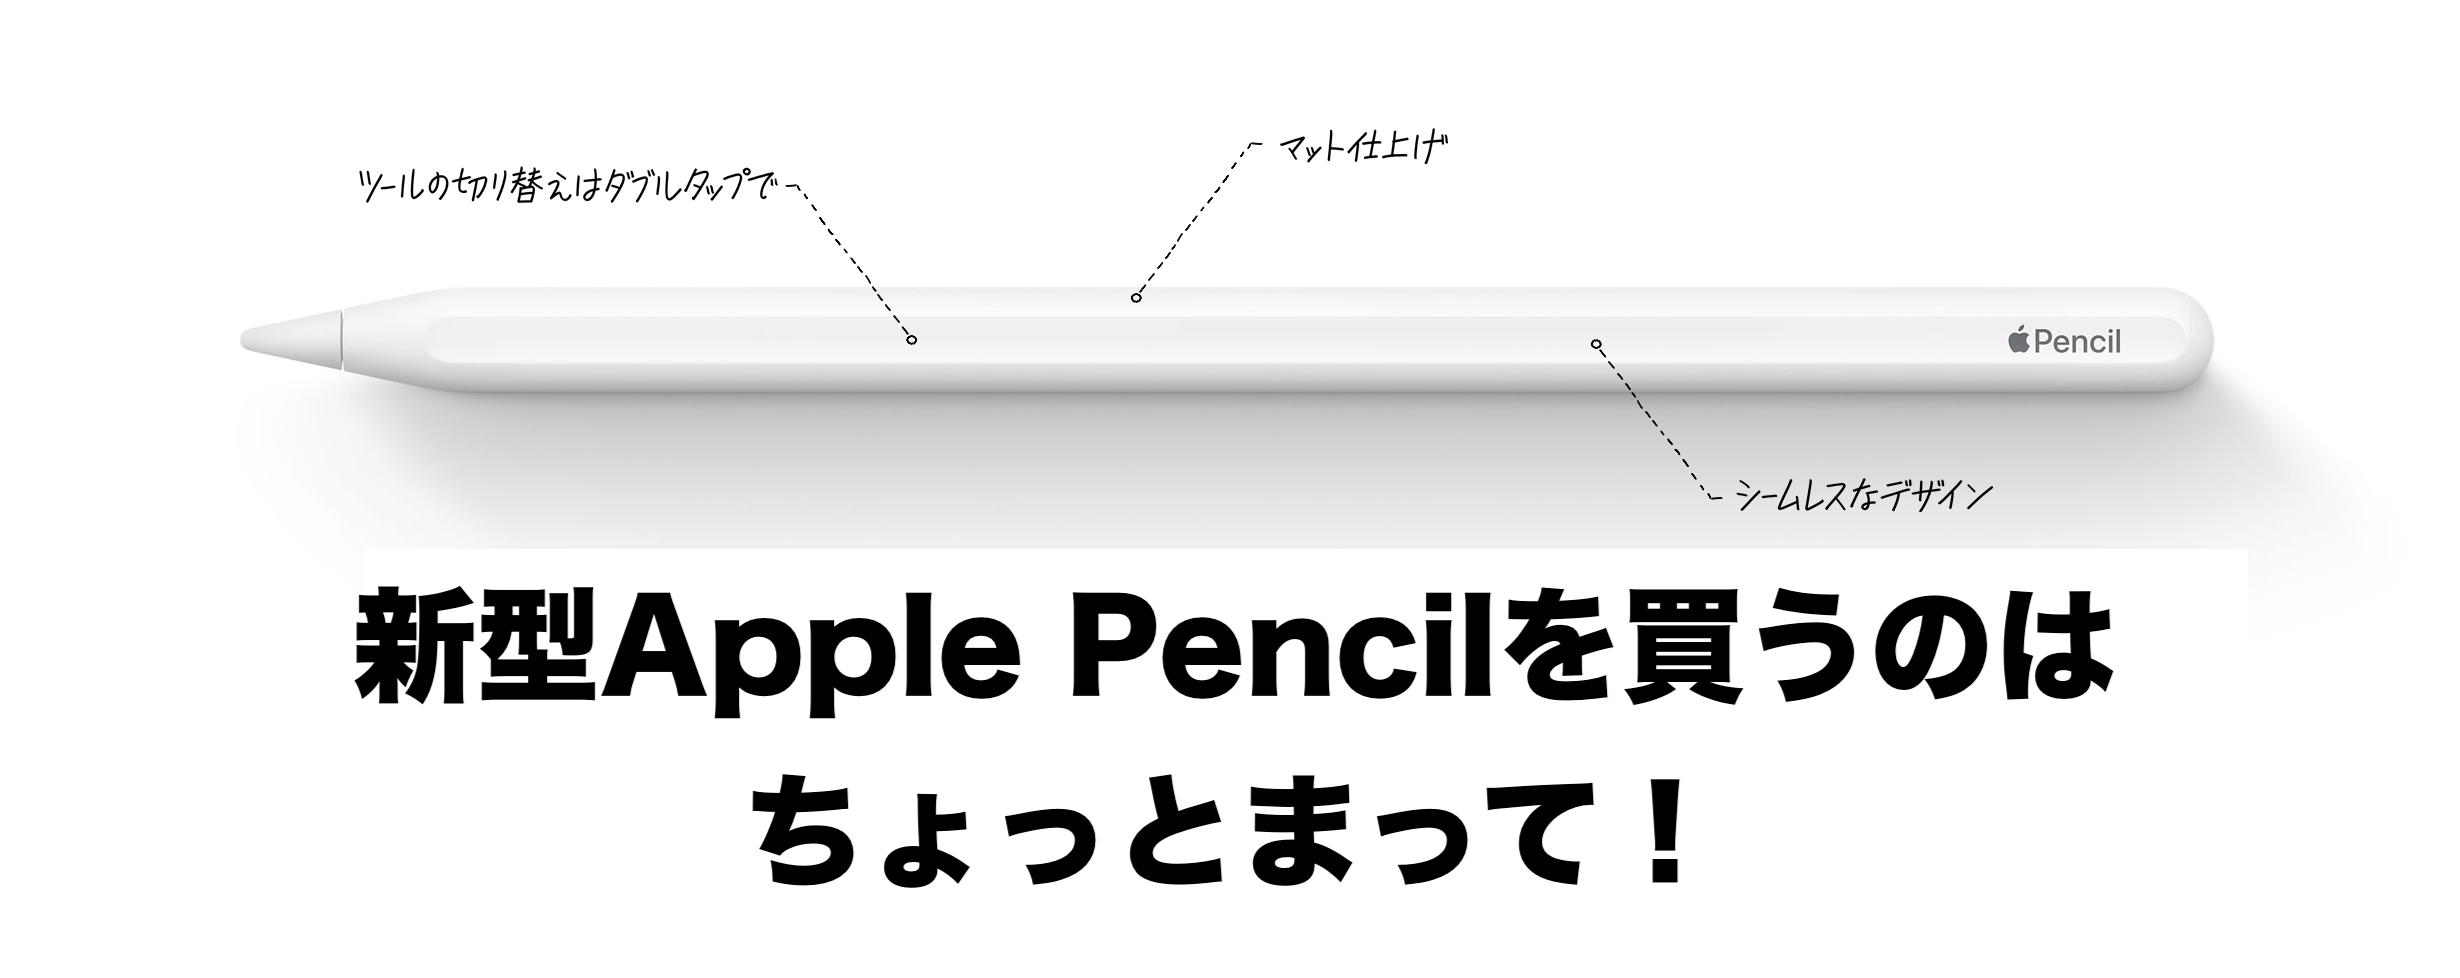 Apple pencil 第2世代よろしくお願いします - スマホアクセサリー